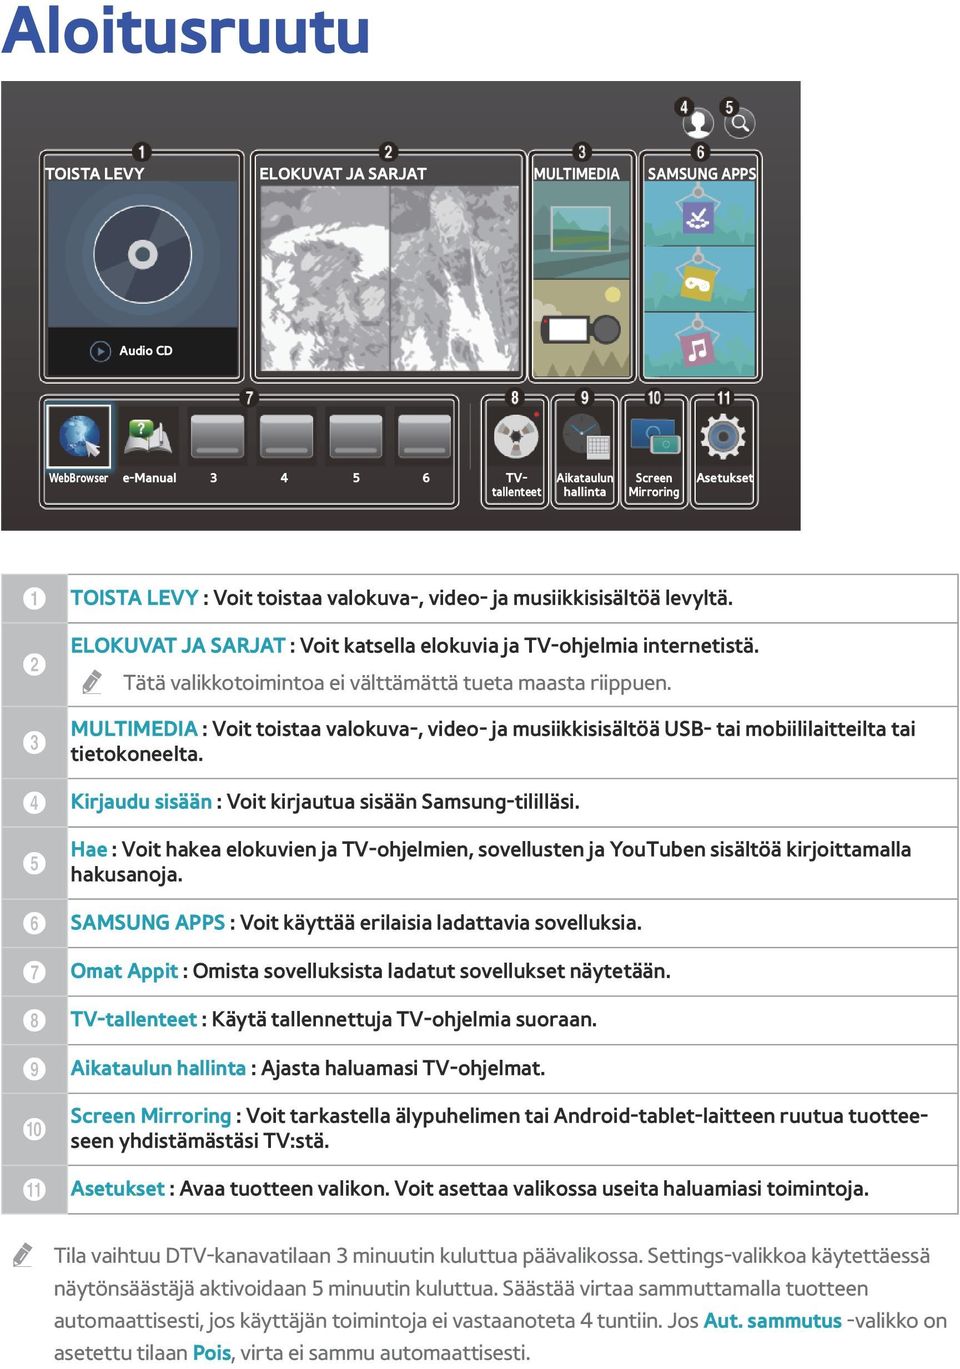 MULTIMEDIA : Voit toistaa valokuva-, video- ja musiikkisisältöä USB- tai mobiililaitteilta tai tietokoneelta. Kirjaudu sisään : Voit kirjautua sisään Samsung-tililläsi.